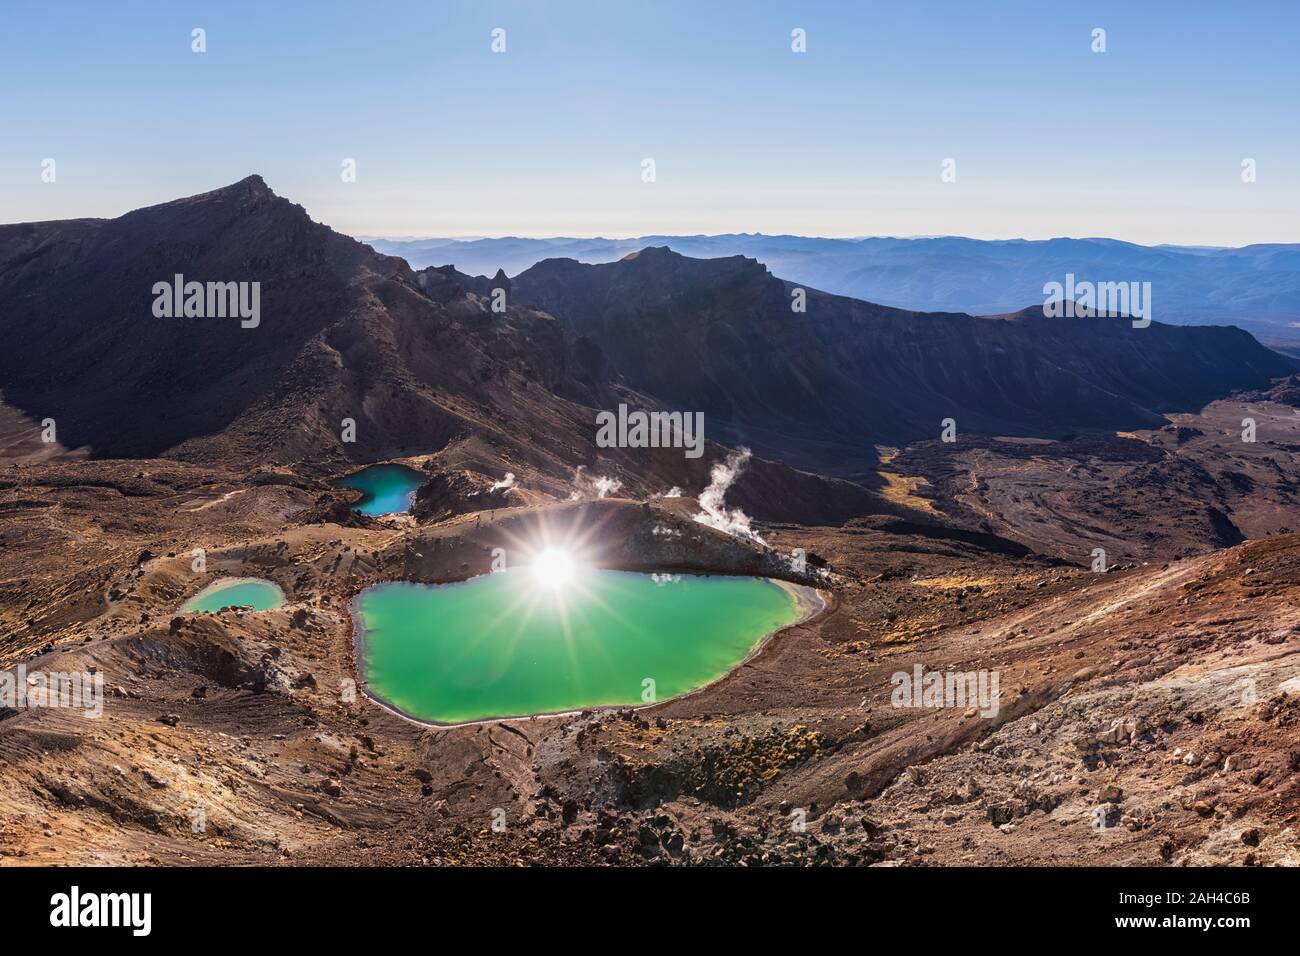 Neuseeland, Nordinsel, Sonne, smaragdgrünen Seen von Norden der Insel vulkanischen Plateau widerspiegelt Stockfoto